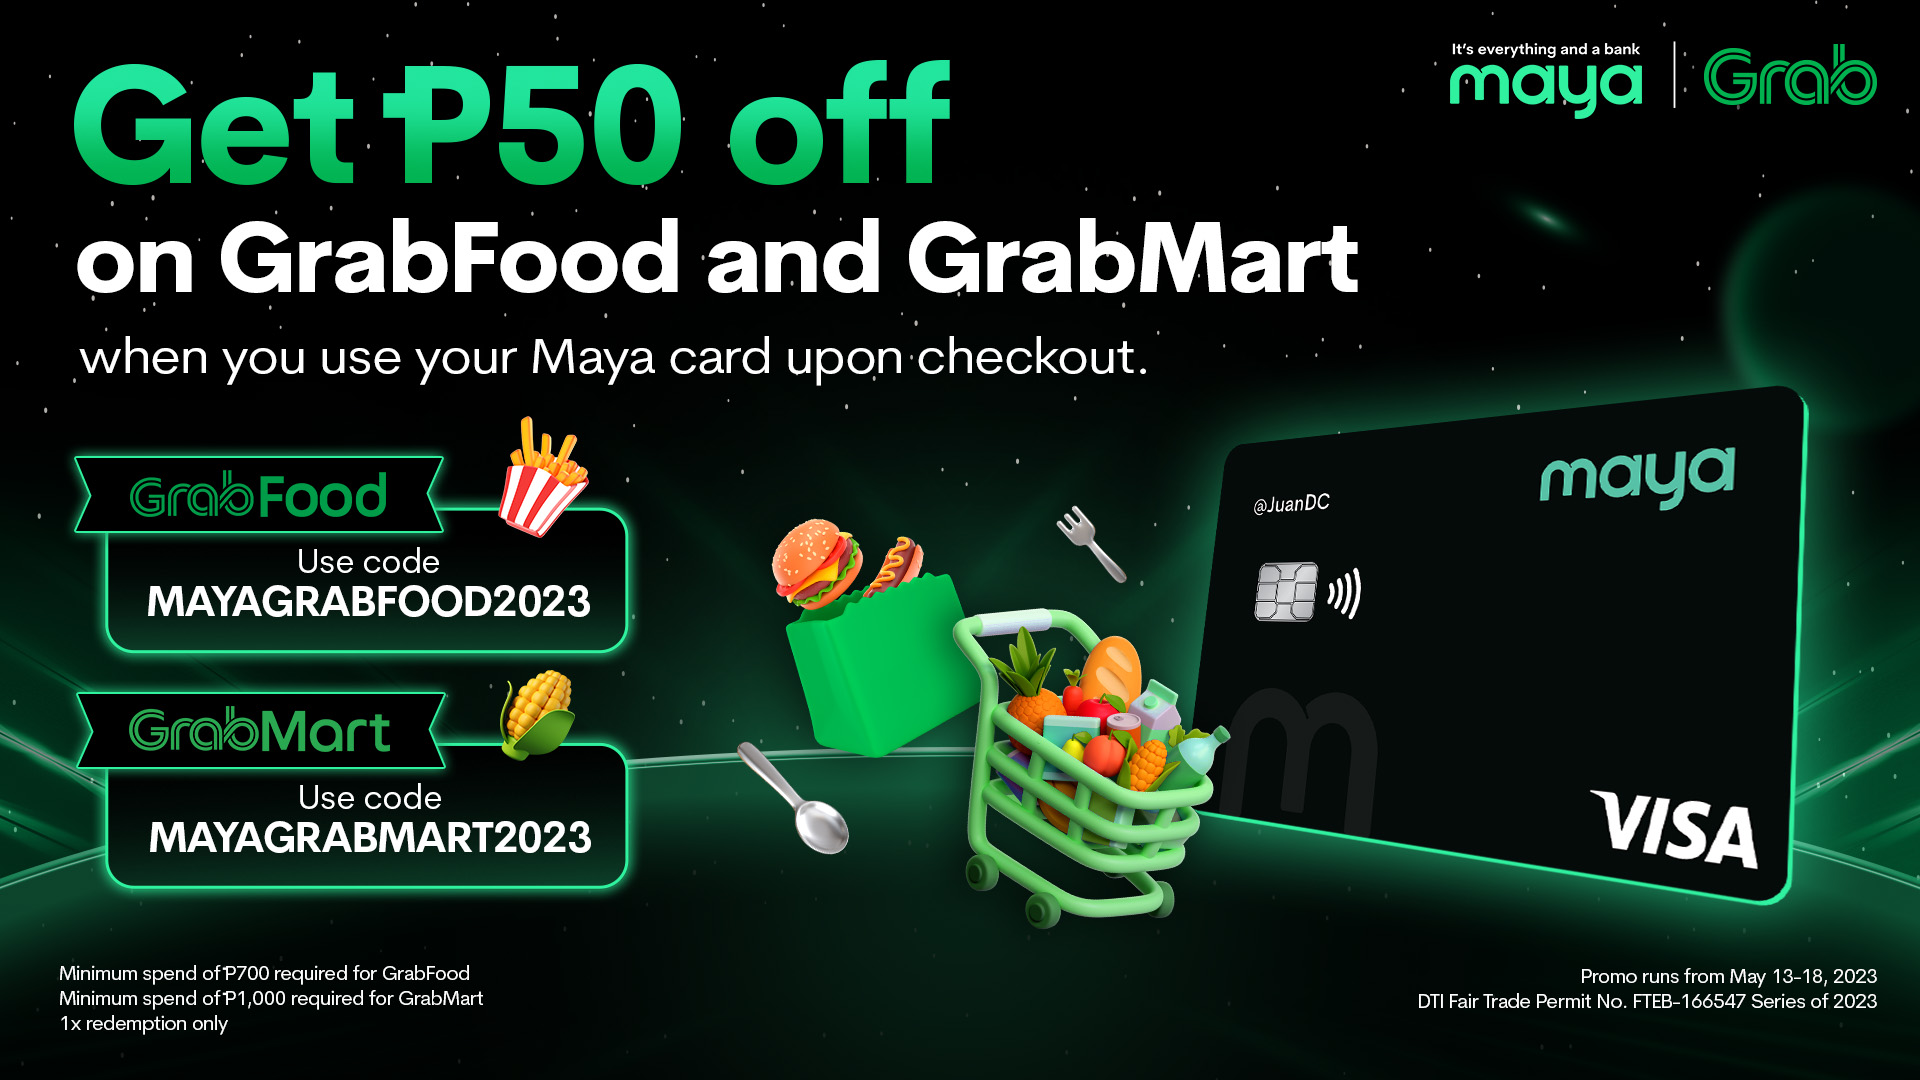 051123 - Maya - EN - grab maya card spend promo deals page copy